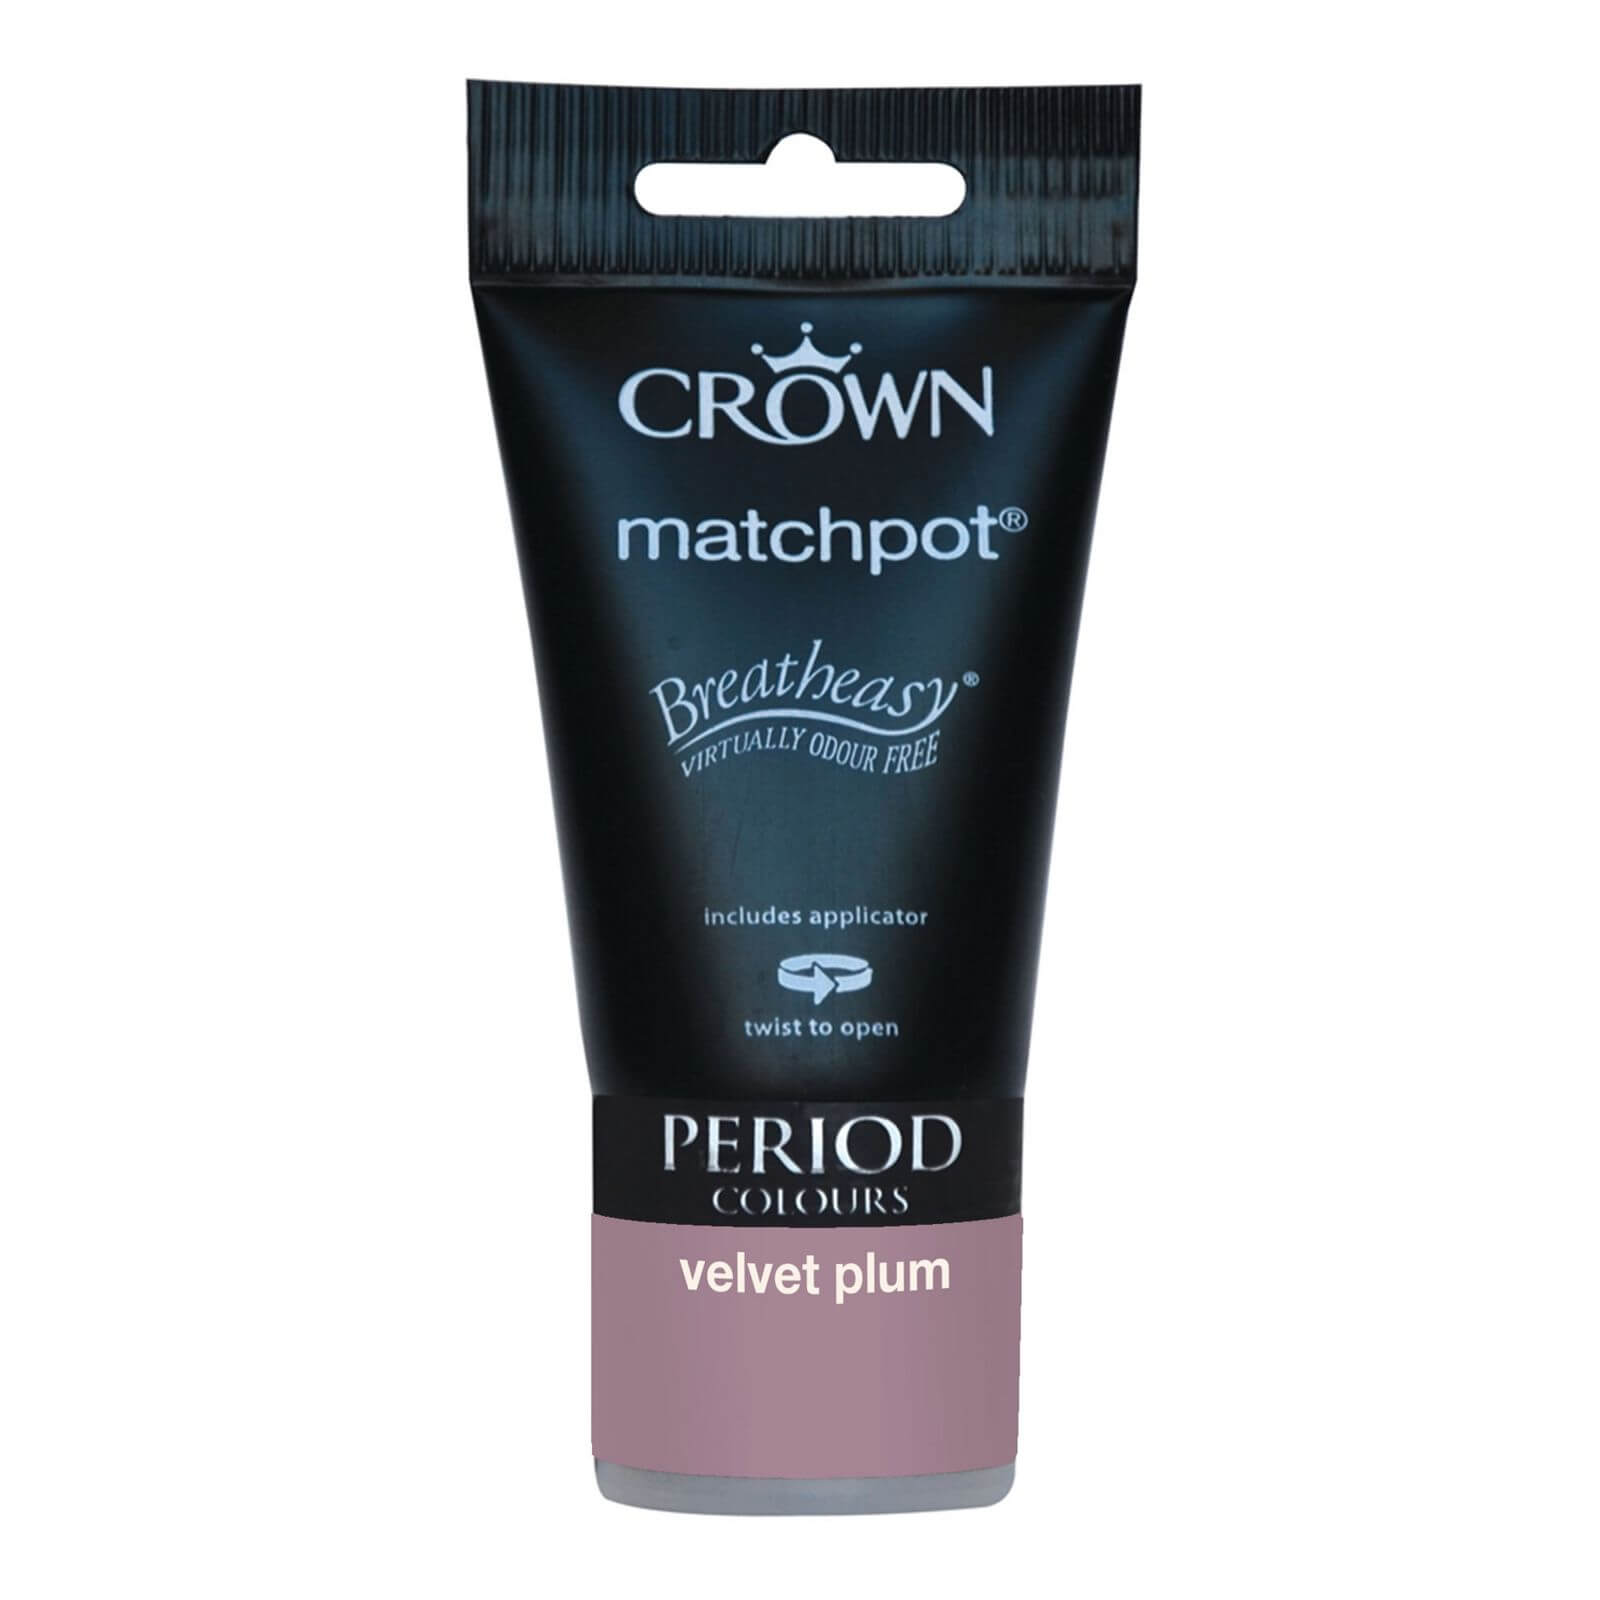 Crown Period Colours Breatheasy Velvet Plum - Flat Matt Emulsion Paint - 40ml Tester